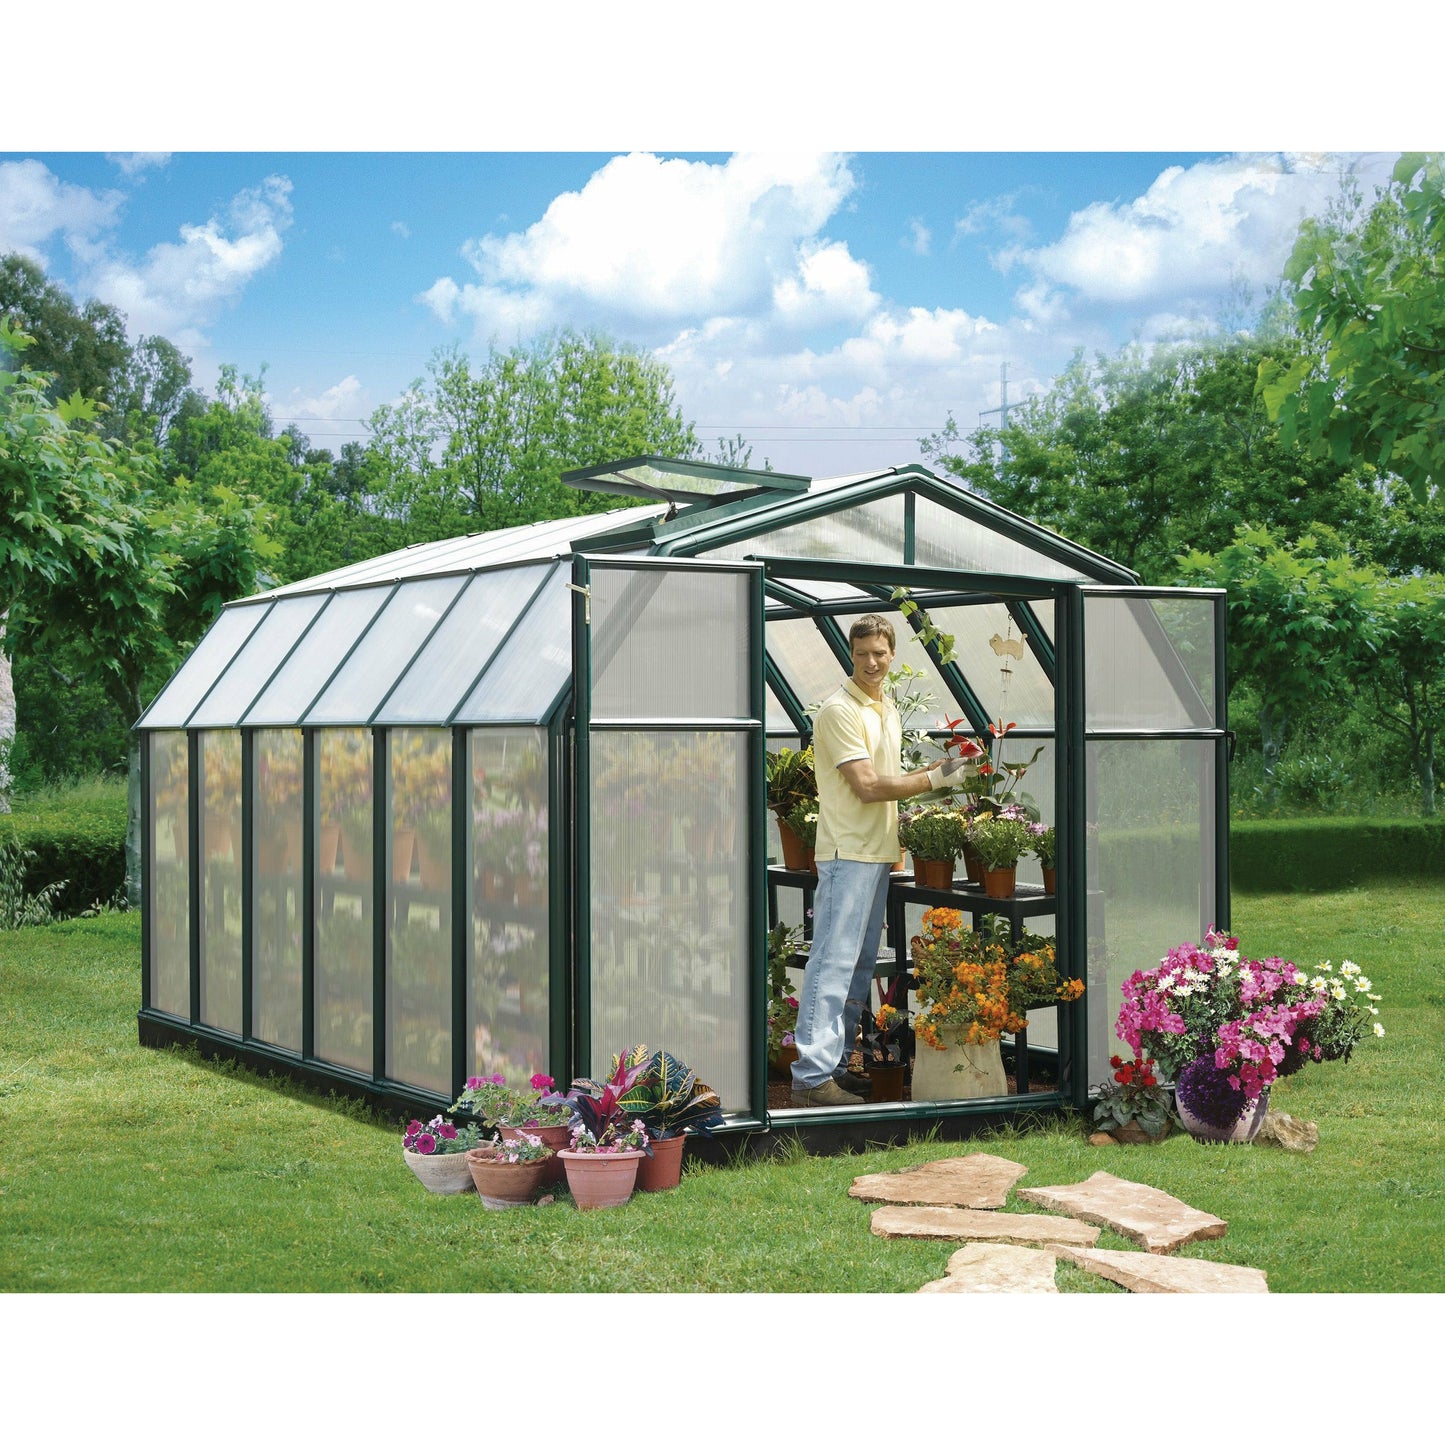 Rion Hobby Gardener 8' x 12' Greenhouse